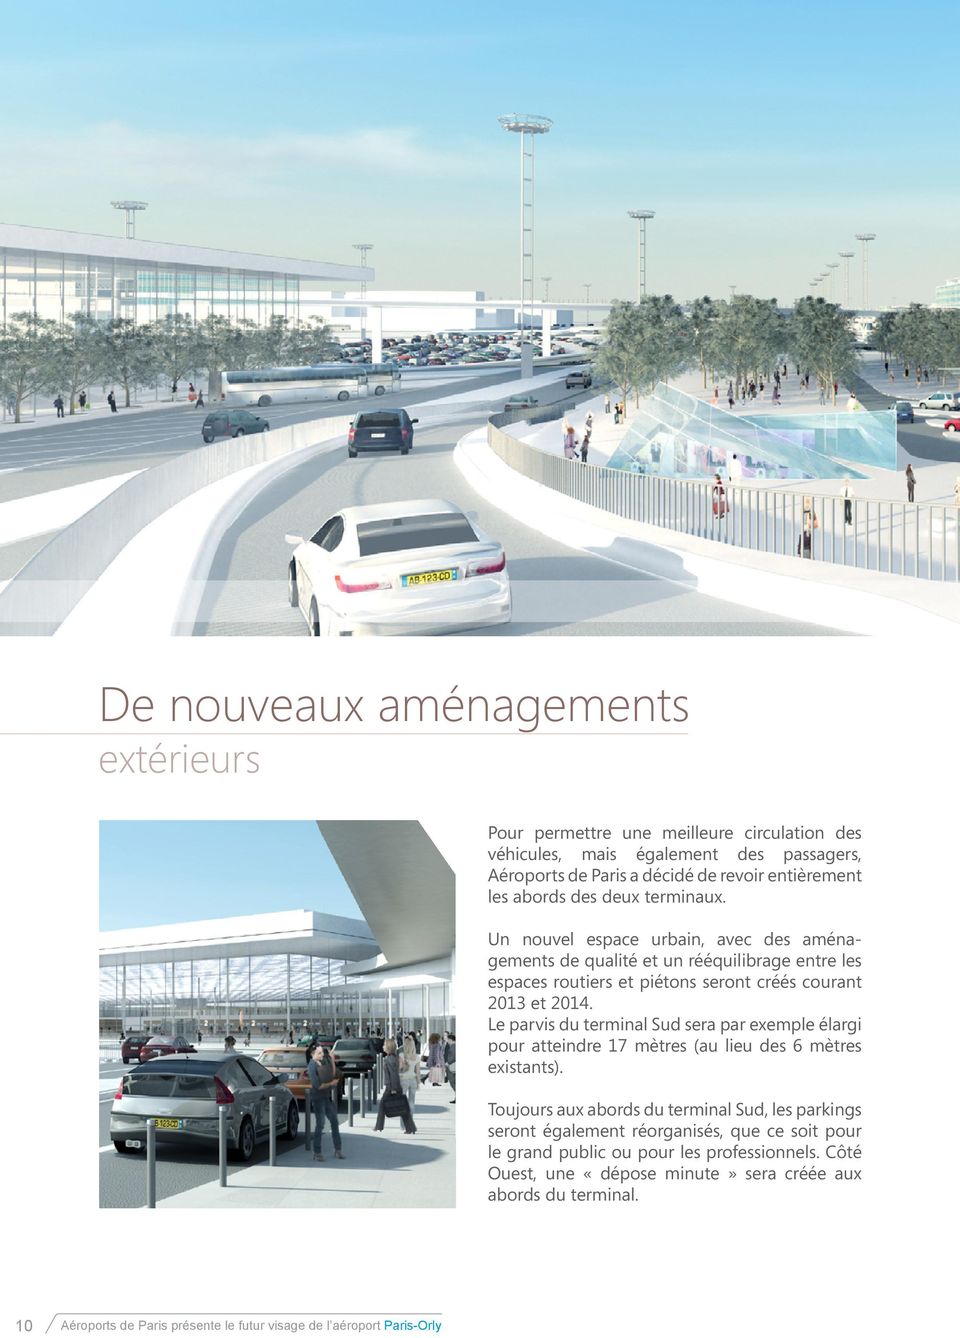 Le parvis du terminal Sud sera par exemple élargi pour atteindre 17 mètres (au lieu des 6 mètres existants).